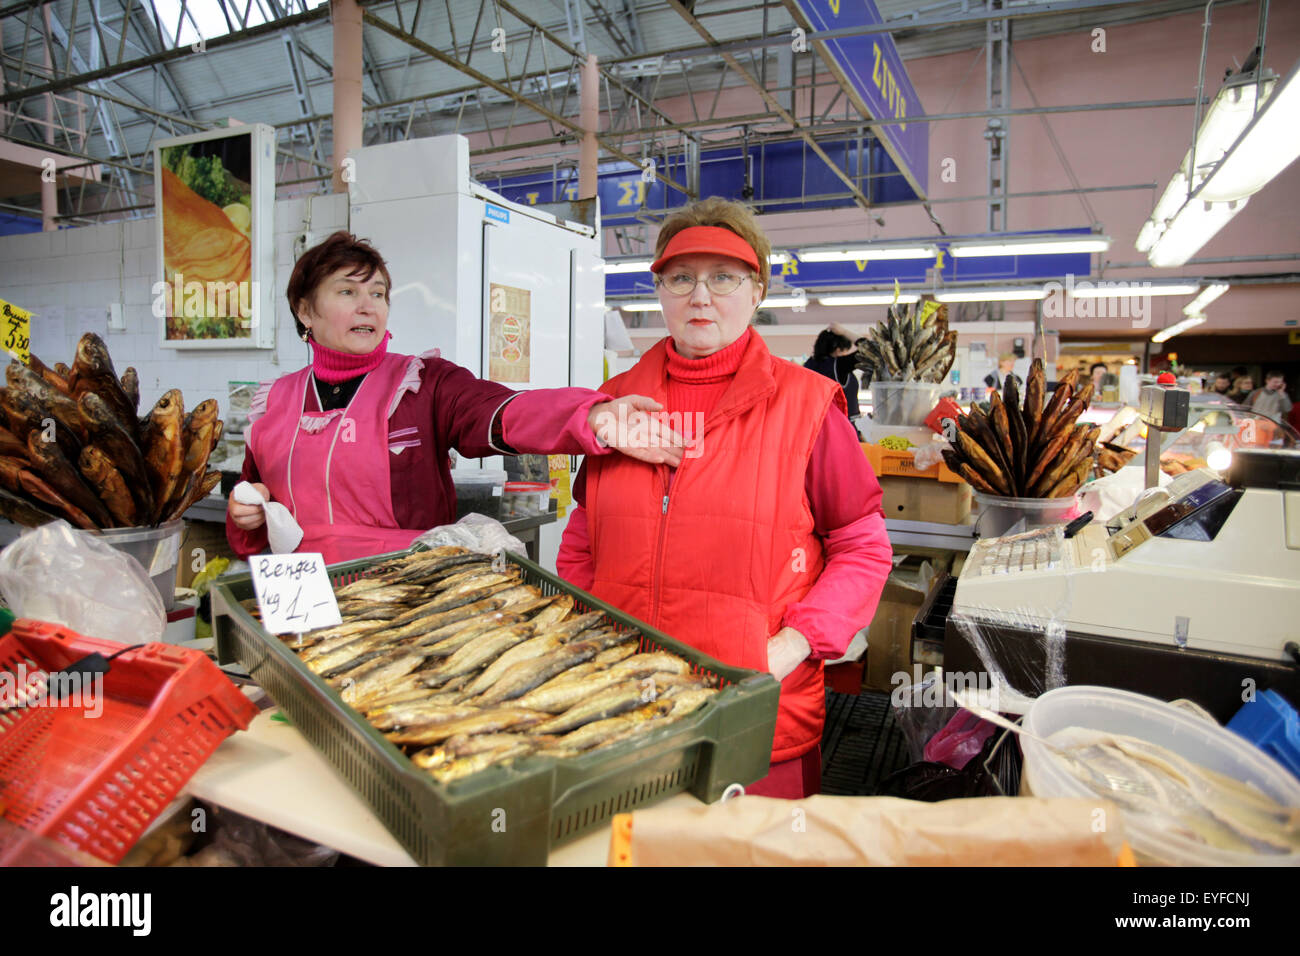 The fish market in the central market, Riga, Latvia. Stock Photo